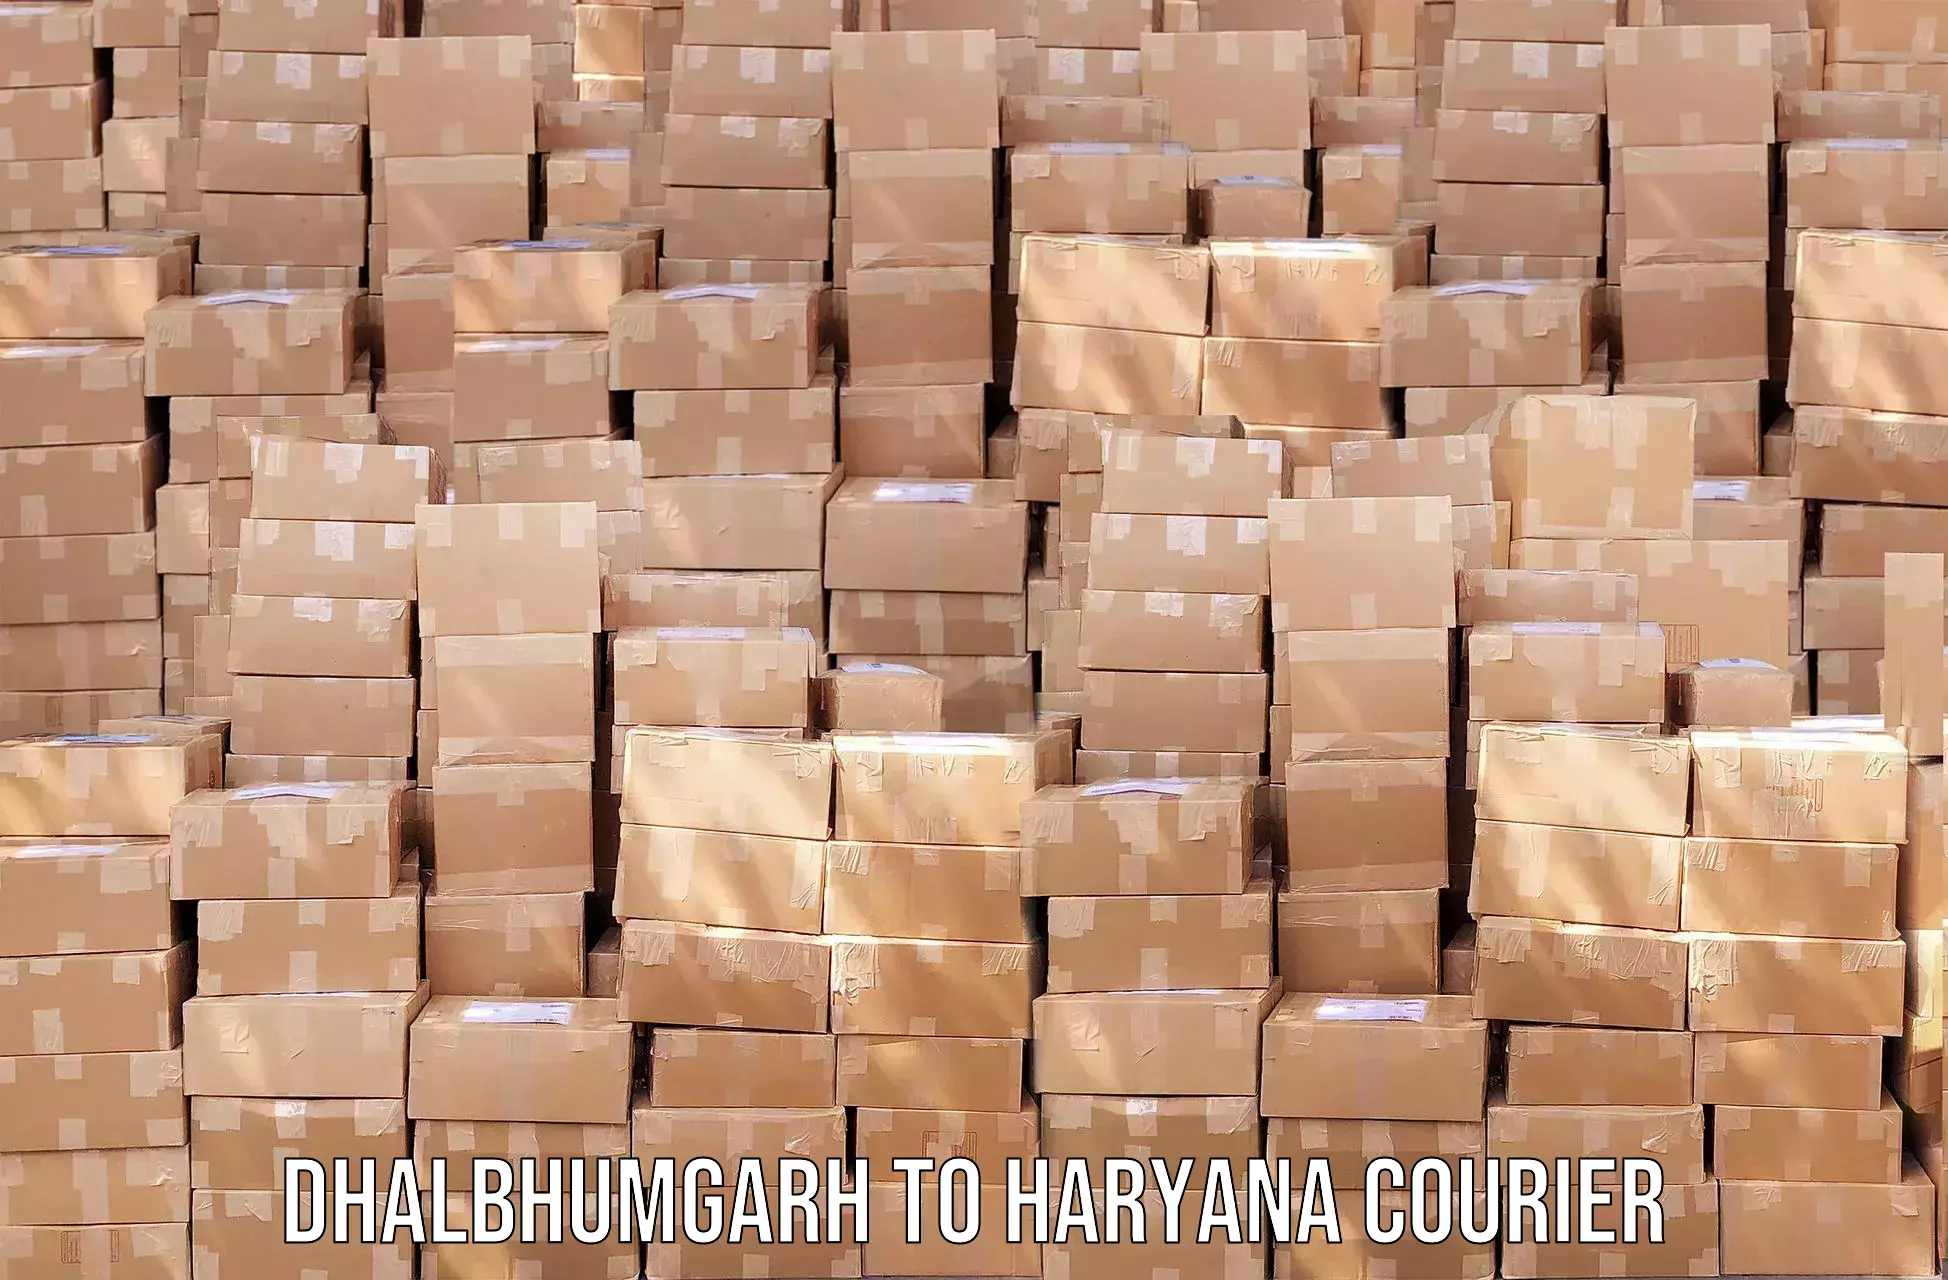 Global shipping networks Dhalbhumgarh to NCR Haryana